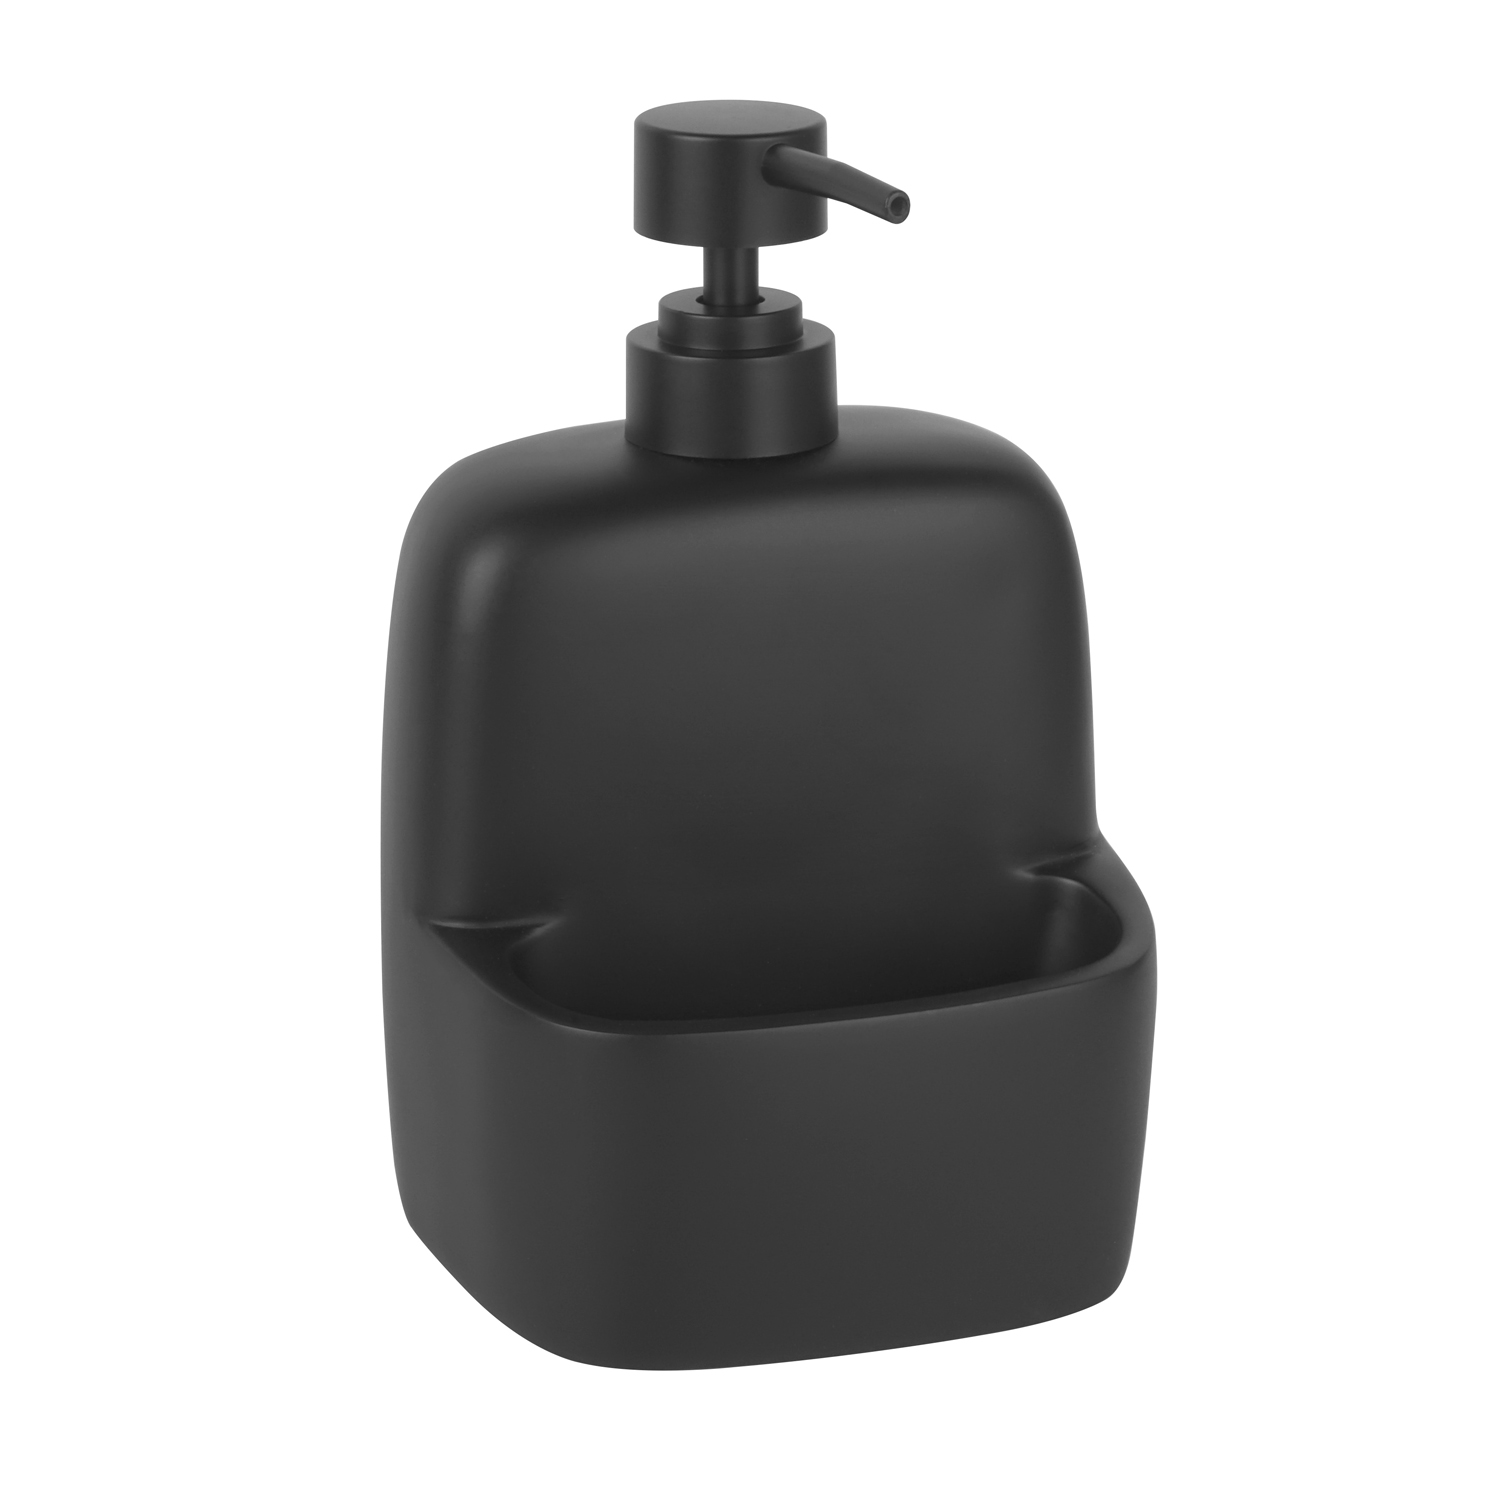 Дозатор WasserKRAFT K-8499 Black для жидкого мыла, настольный, цвет черный